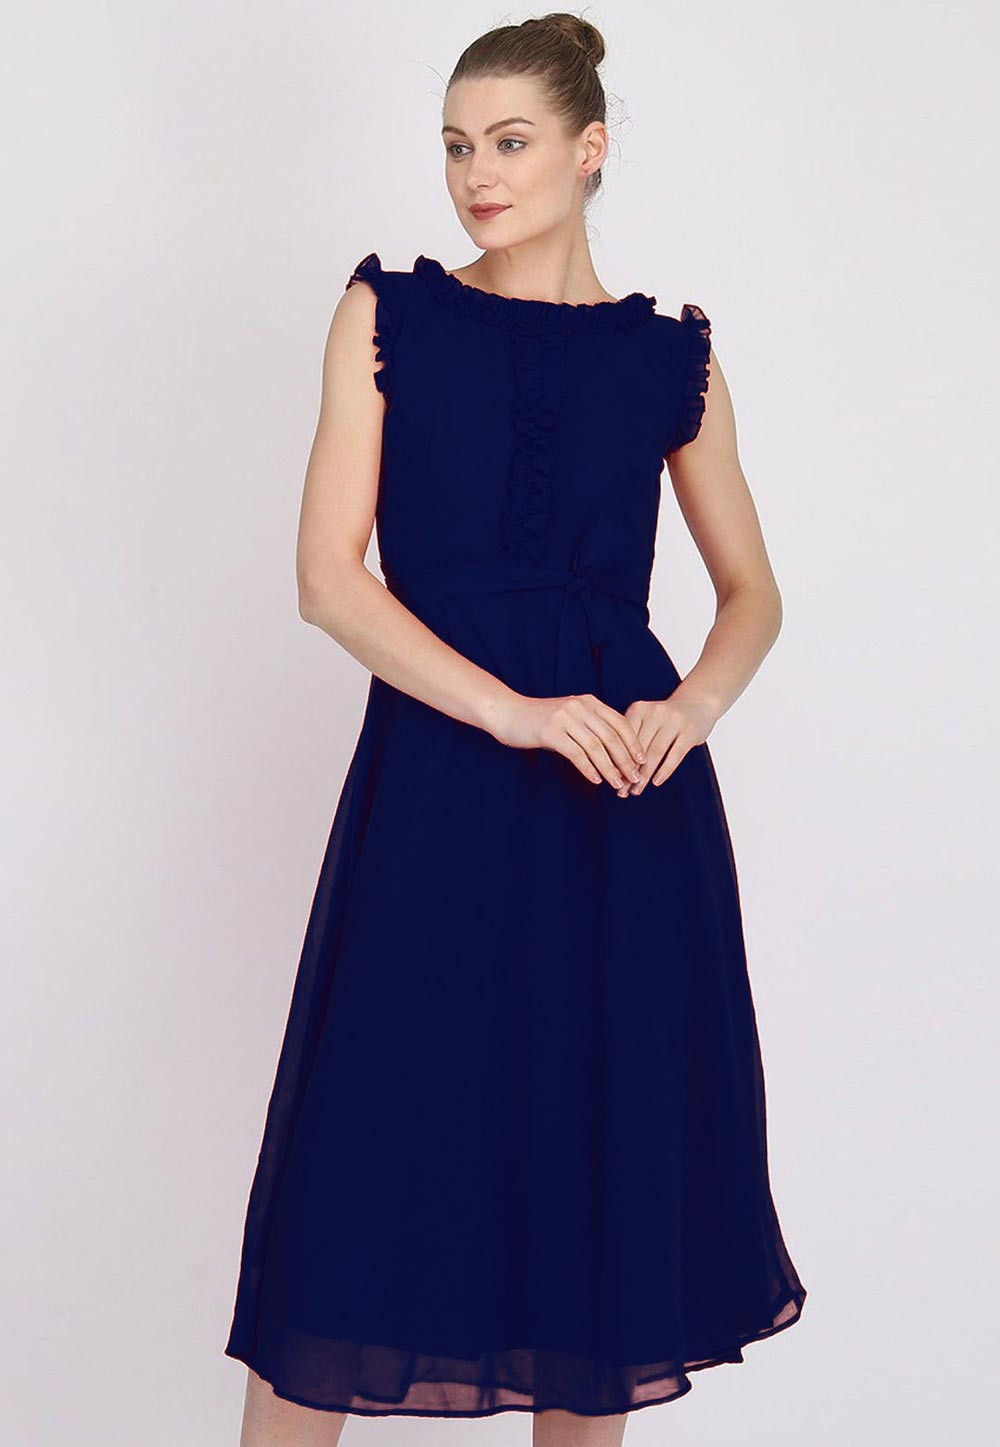 Buy Solid Color Georgette Dress in Navy Blue Online : TVE848 - Utsav ...